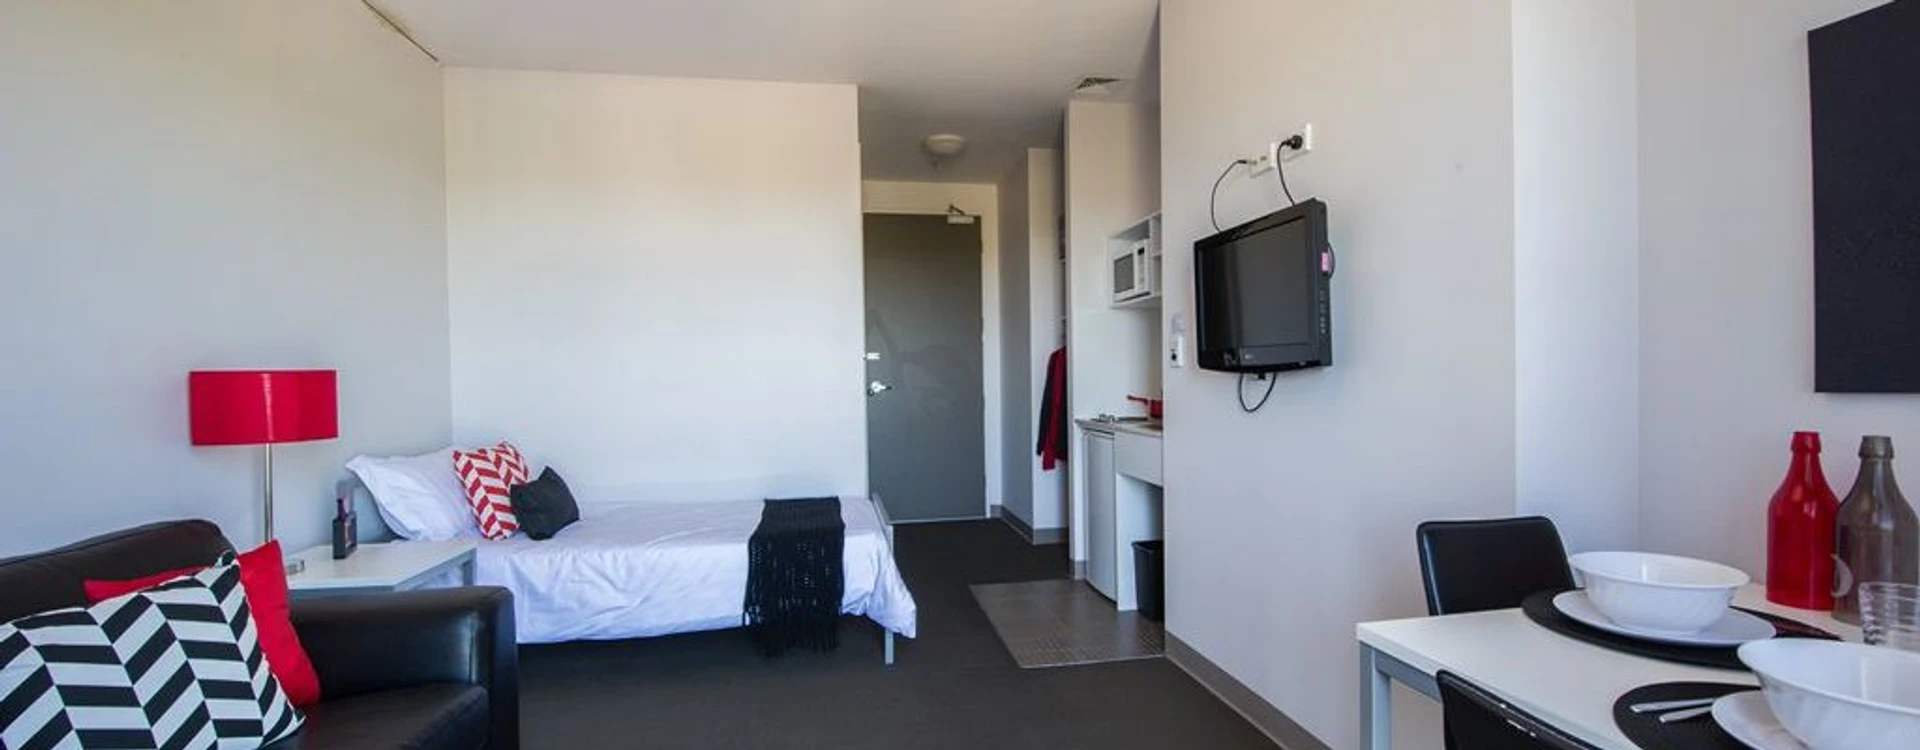 Quarto para alugar com cama de casal em Adelaide